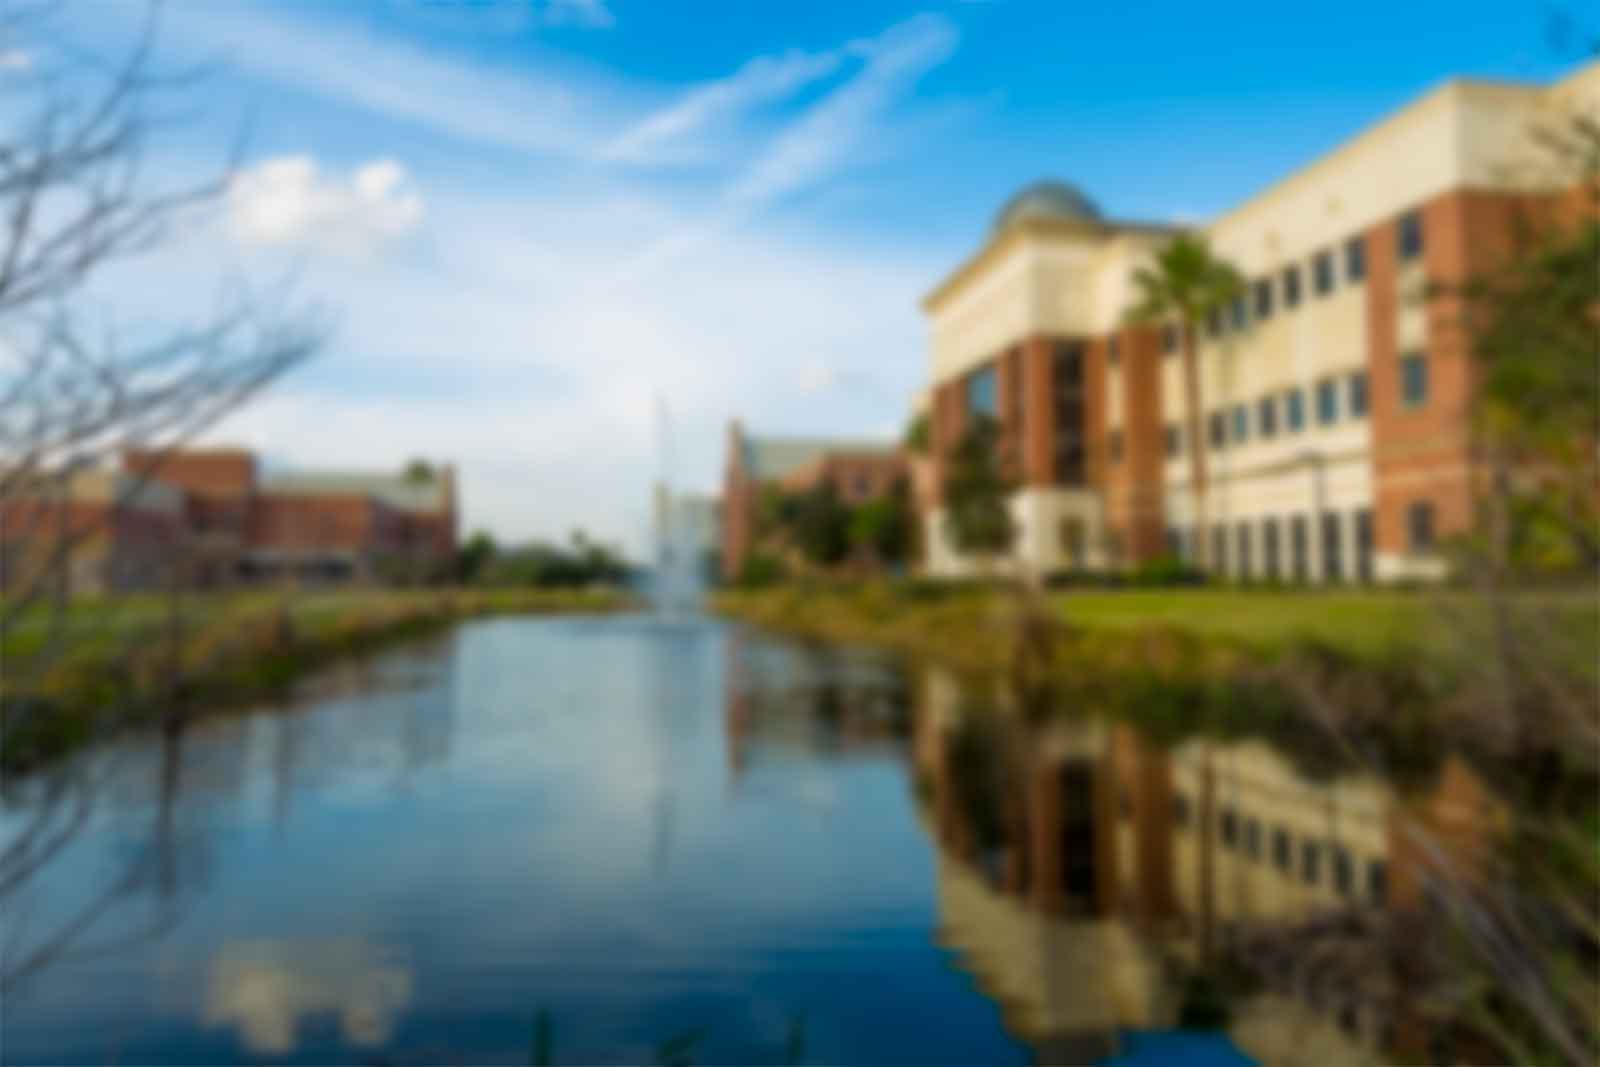 Florida Tech Campus